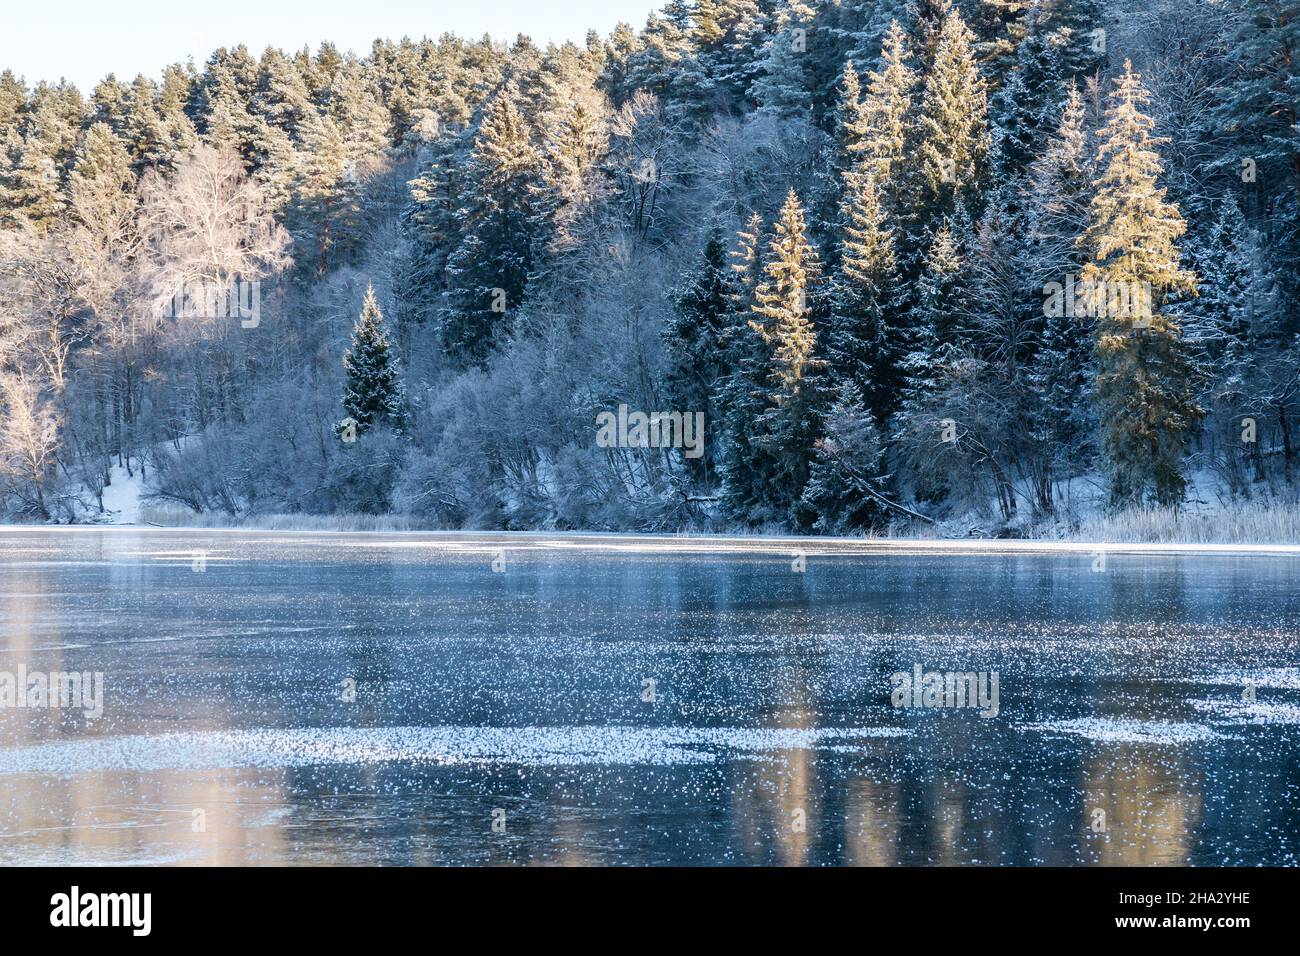 Ein Blick auf Milchbäume in der Nähe eines gerade gefrorenen Sees an einem sonnigen Wintertag Stockfoto